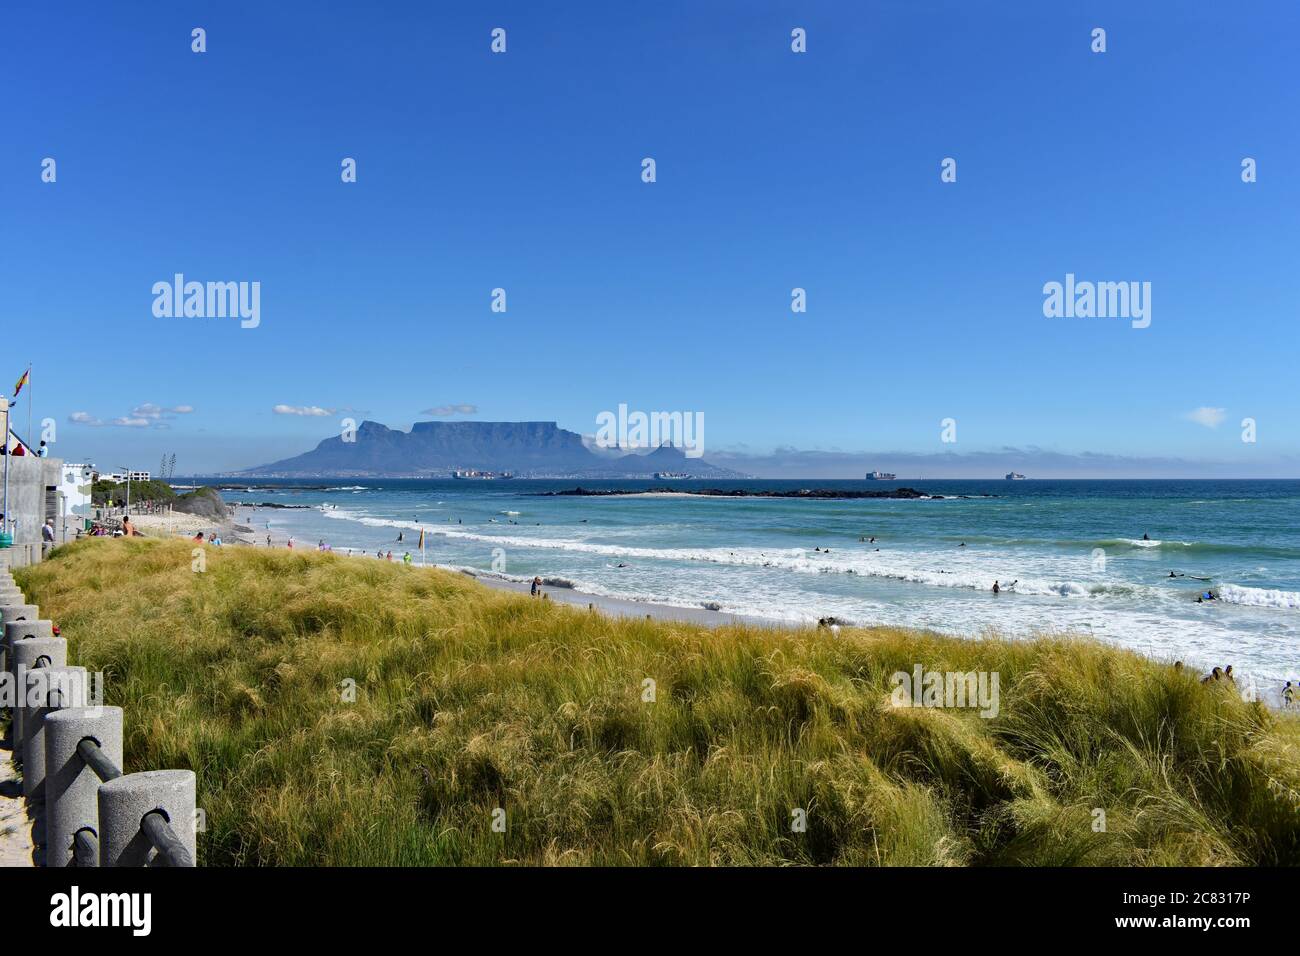 Tafelberg, Devils Peak & Lions Head vom Bloubergstrand Beach aus gesehen von der anderen Seite der Table Bay. Grünes Gras kontrastiert mit dem Blau des Himmels und des Ozeans Stockfoto